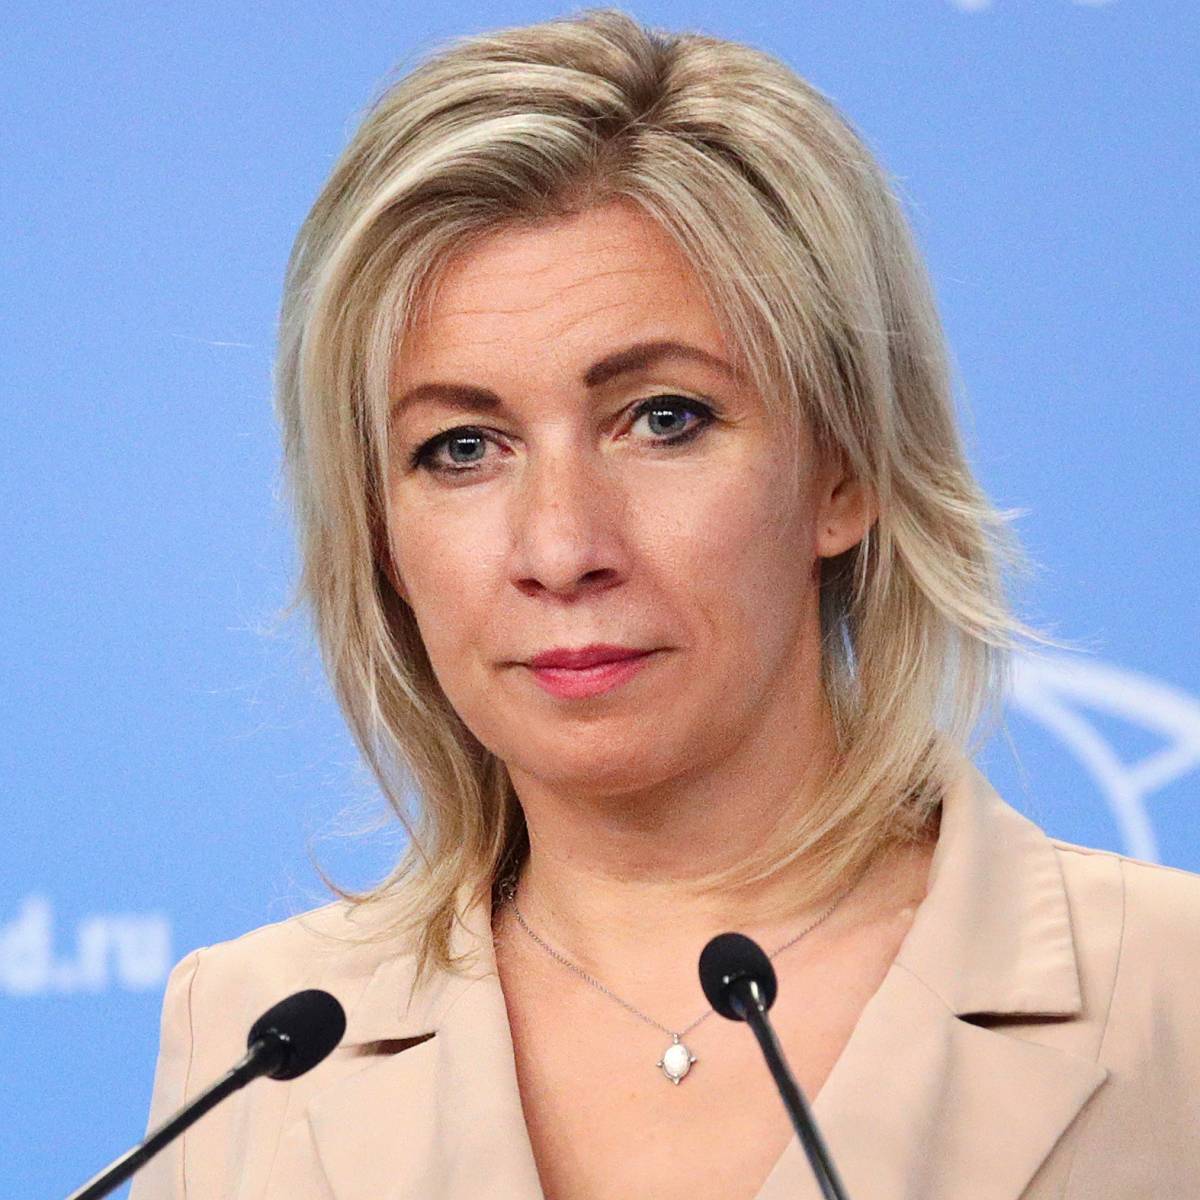 Захарова оценила высказывание посла Украины о ядерном статусе